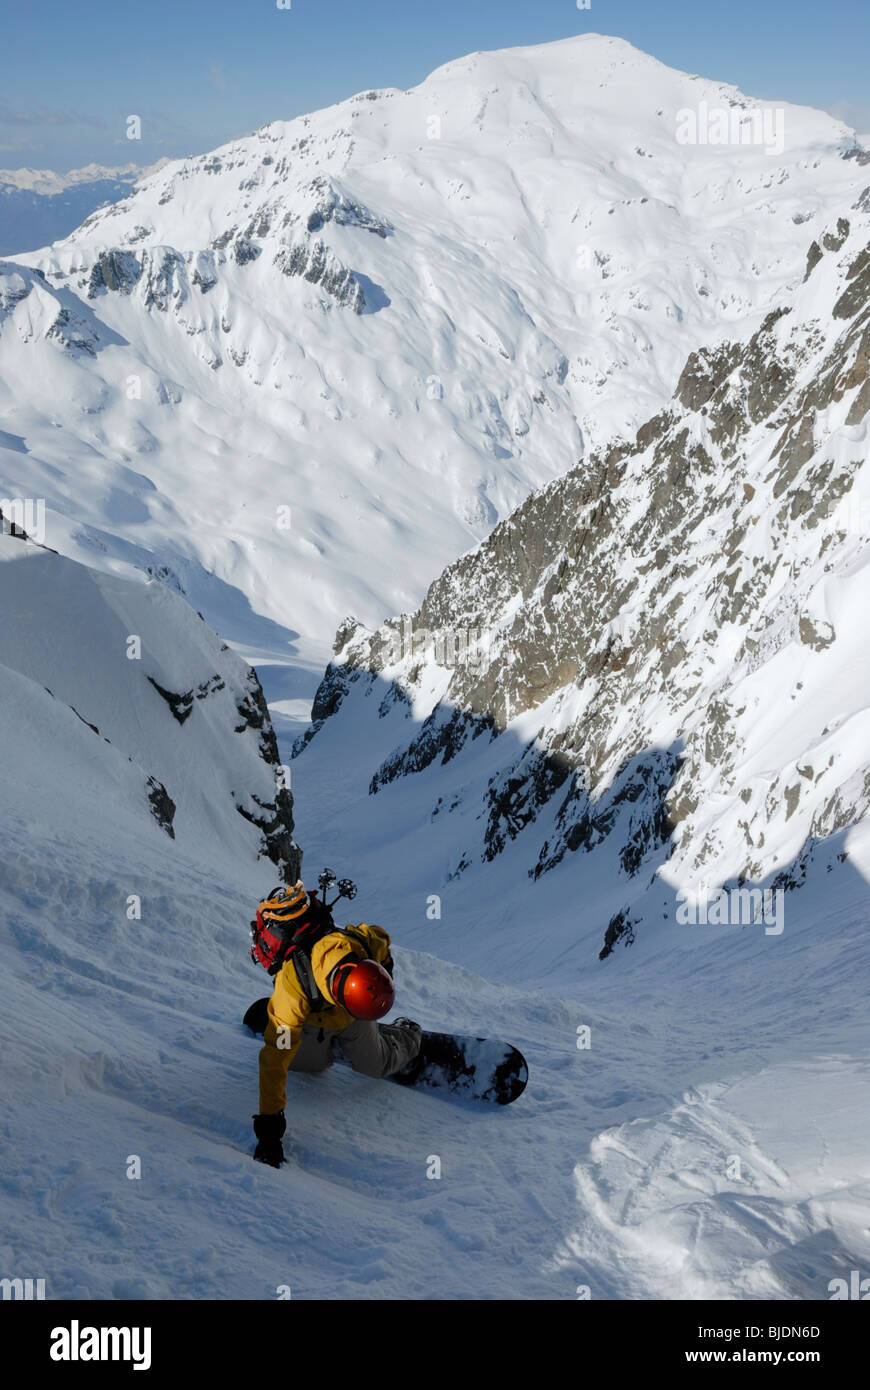 Snowboarder, die Eingabe von sehr steilen gully am Col Belvede, in der Nähe von Le Brévent-Flegere Skigebiet Chamonix, Frankreich. Mt Buet in Ferne. Stockfoto